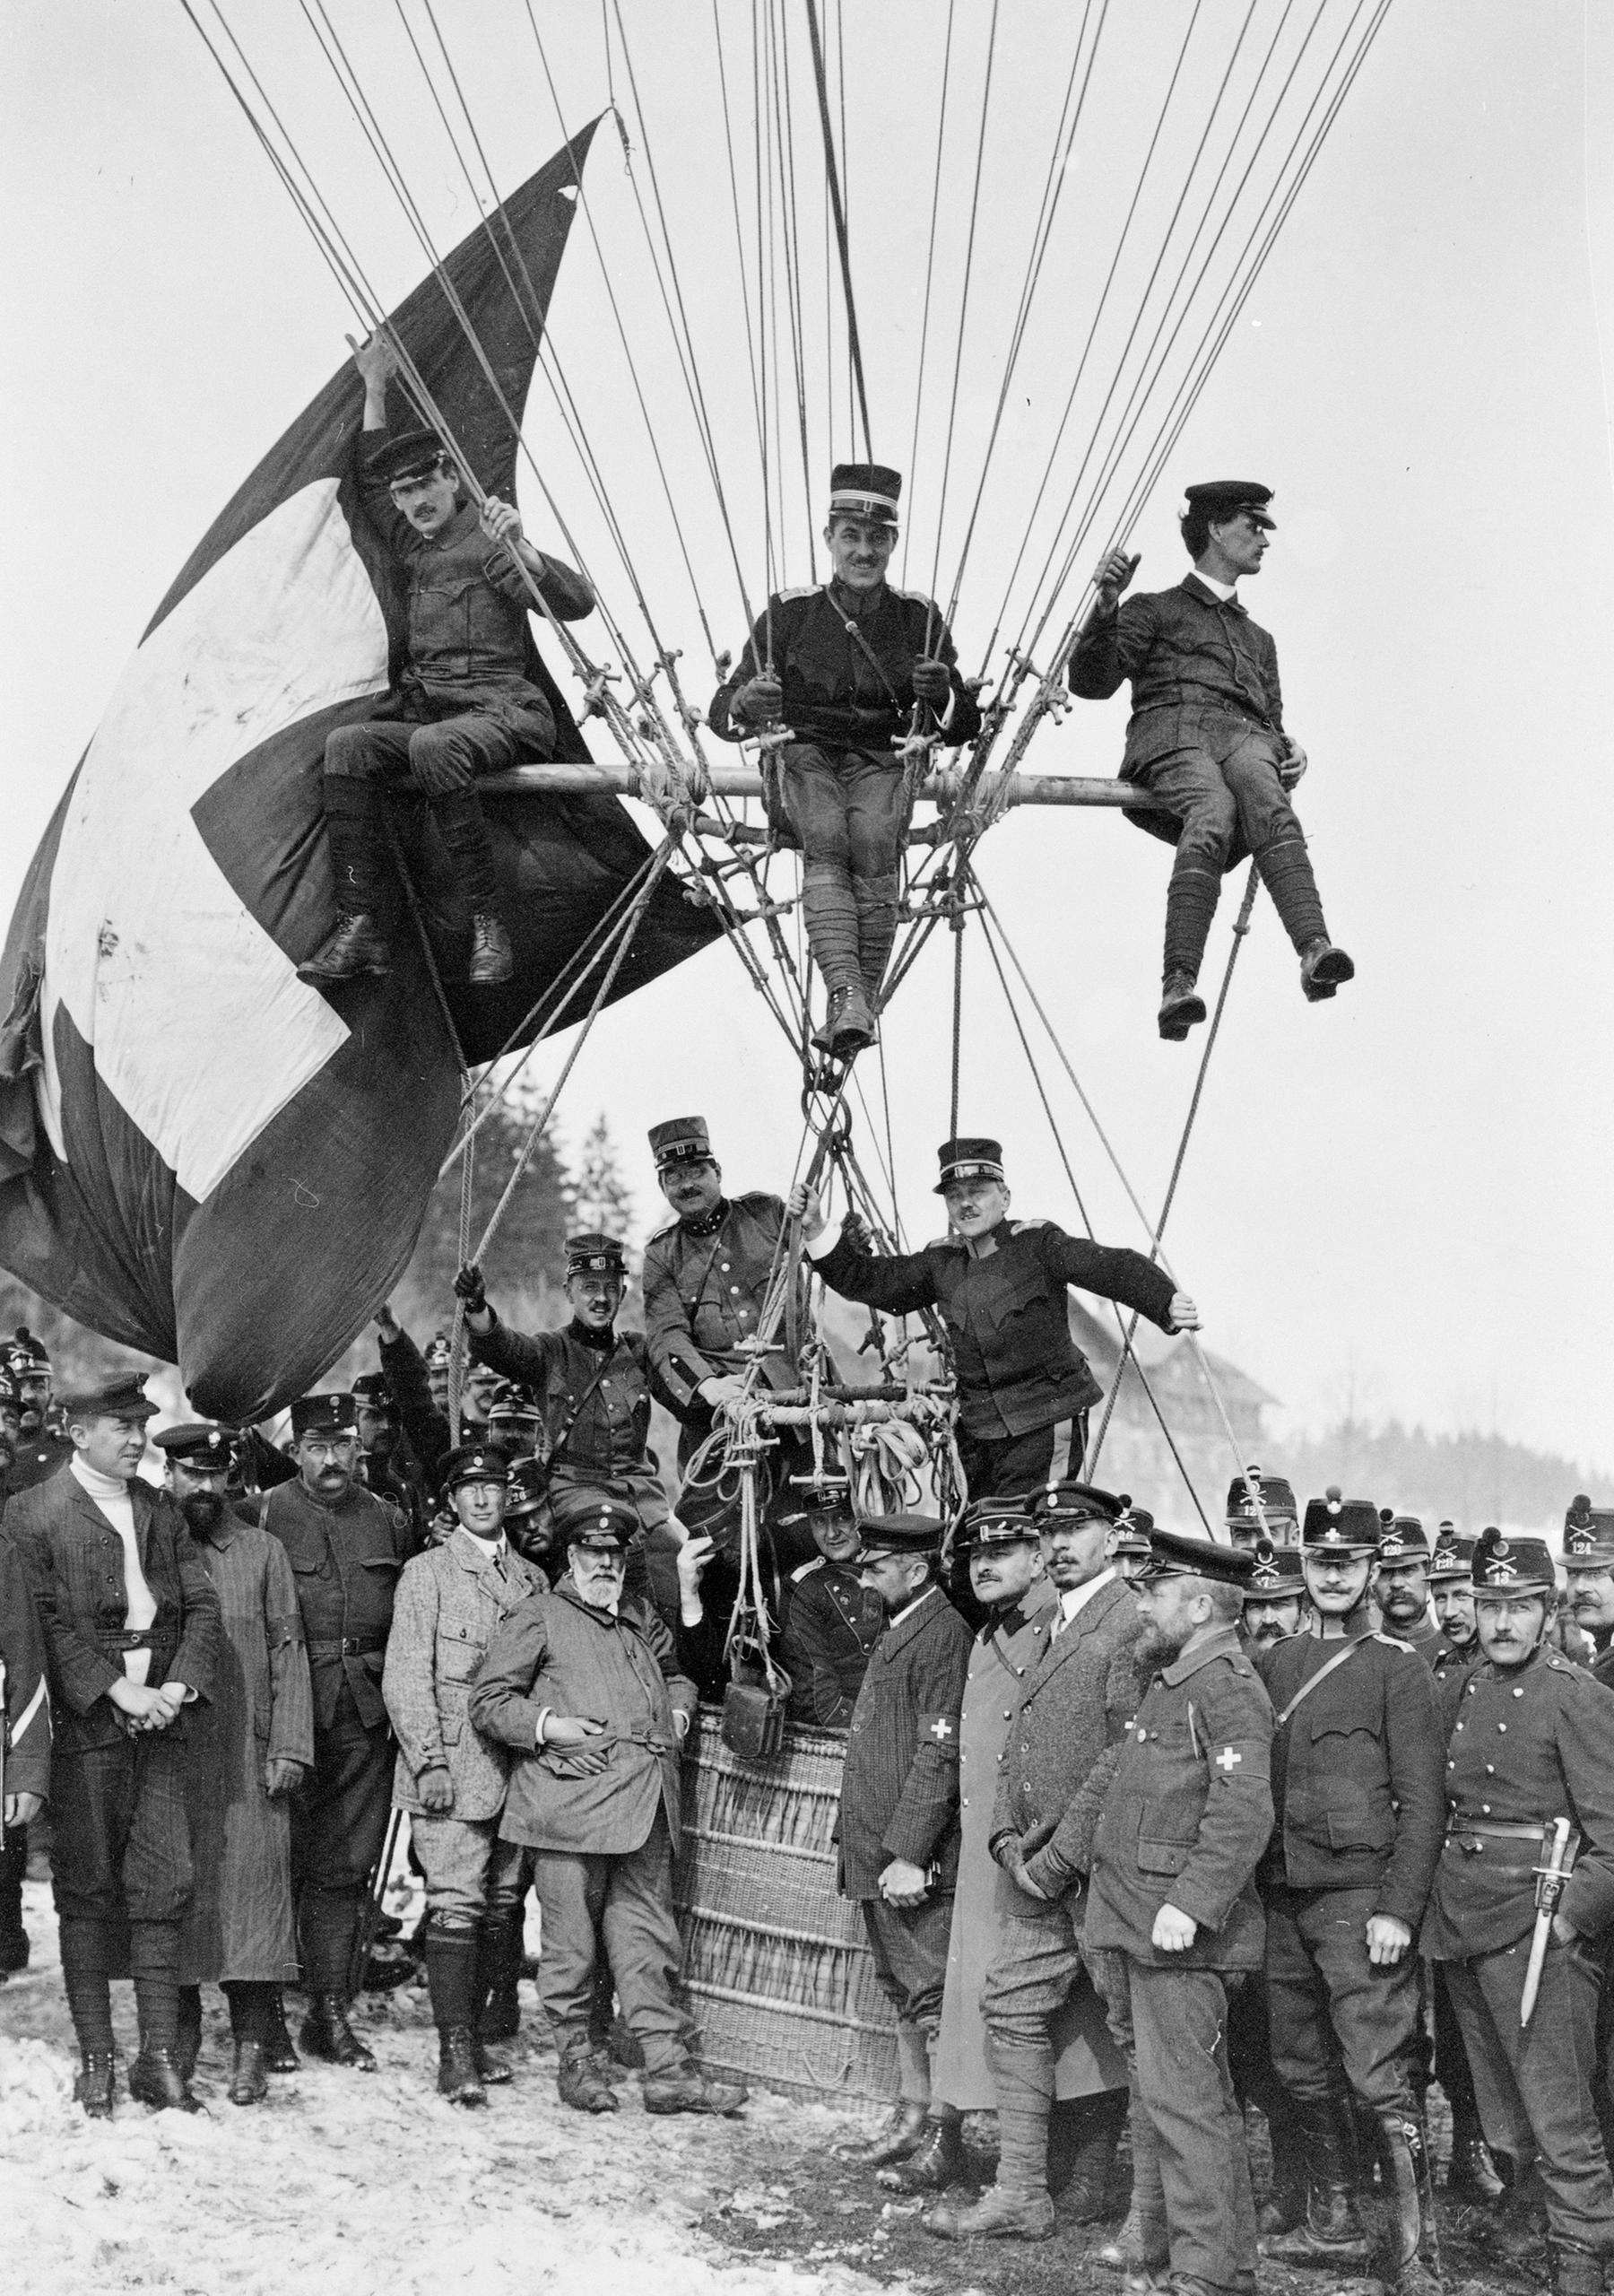 الفريق السويسري الذي شارك في كأسغوردون بينيت في زيورخ سنة 1909